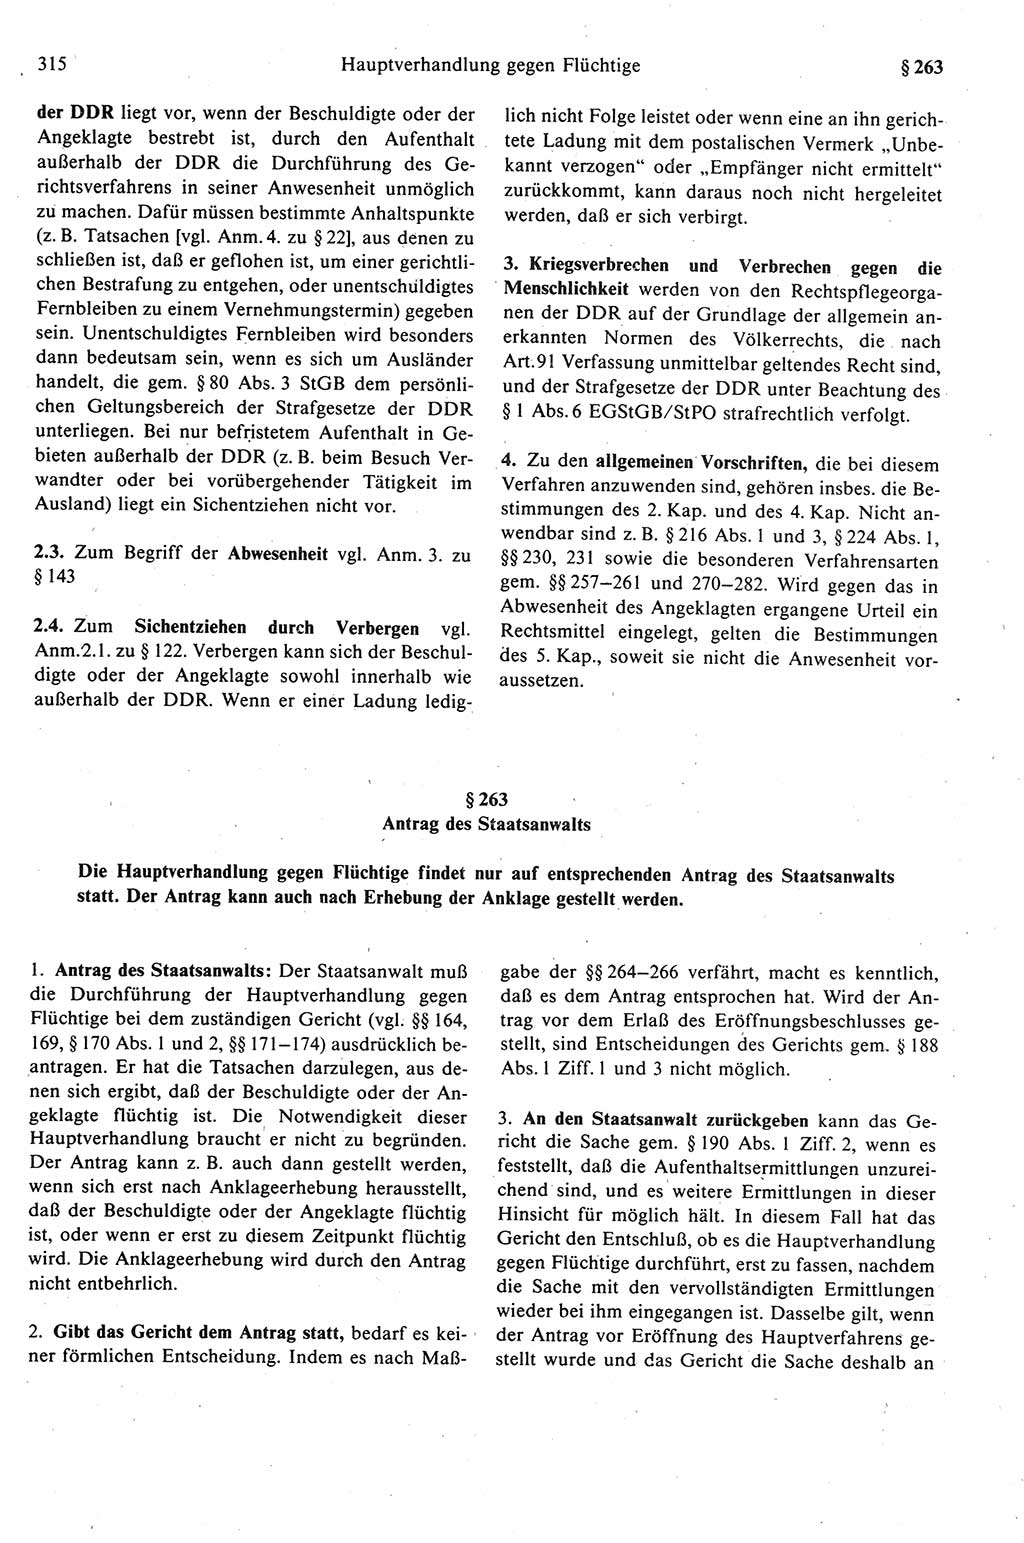 Strafprozeßrecht der DDR (Deutsche Demokratische Republik), Kommentar zur Strafprozeßordnung (StPO) 1989, Seite 315 (Strafprozeßr. DDR Komm. StPO 1989, S. 315)